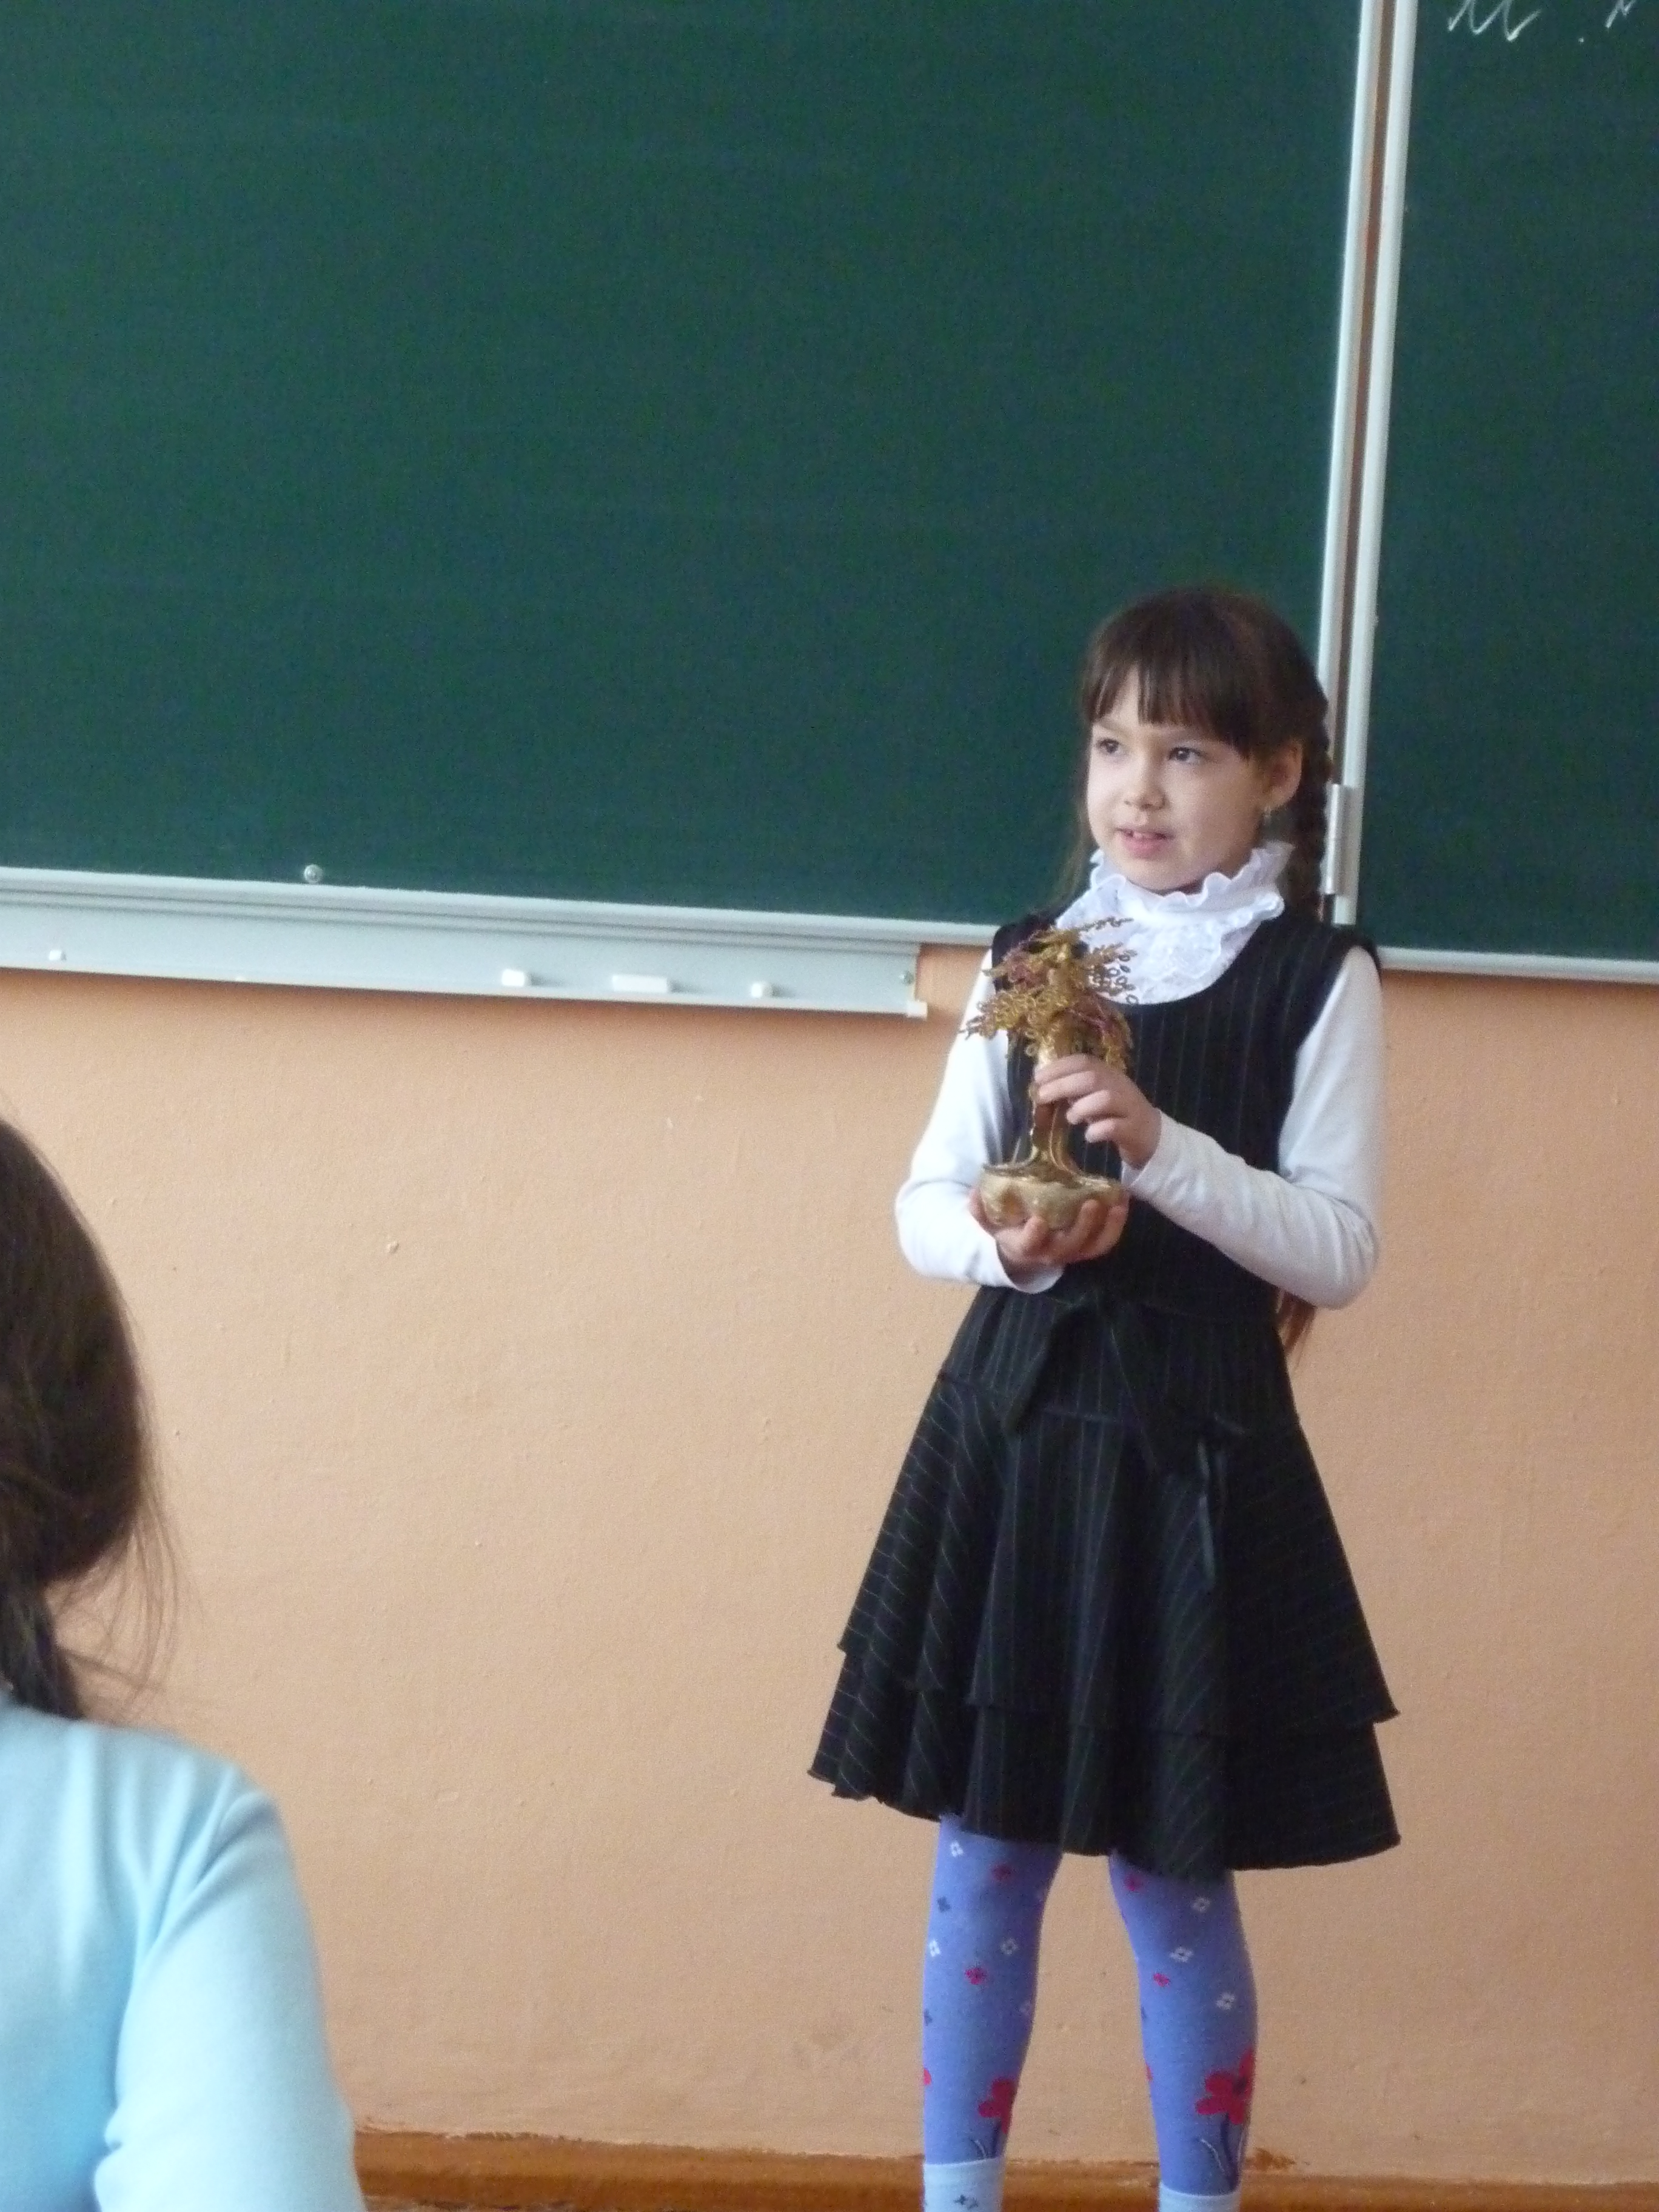 Васенкова Милена, 1 класс